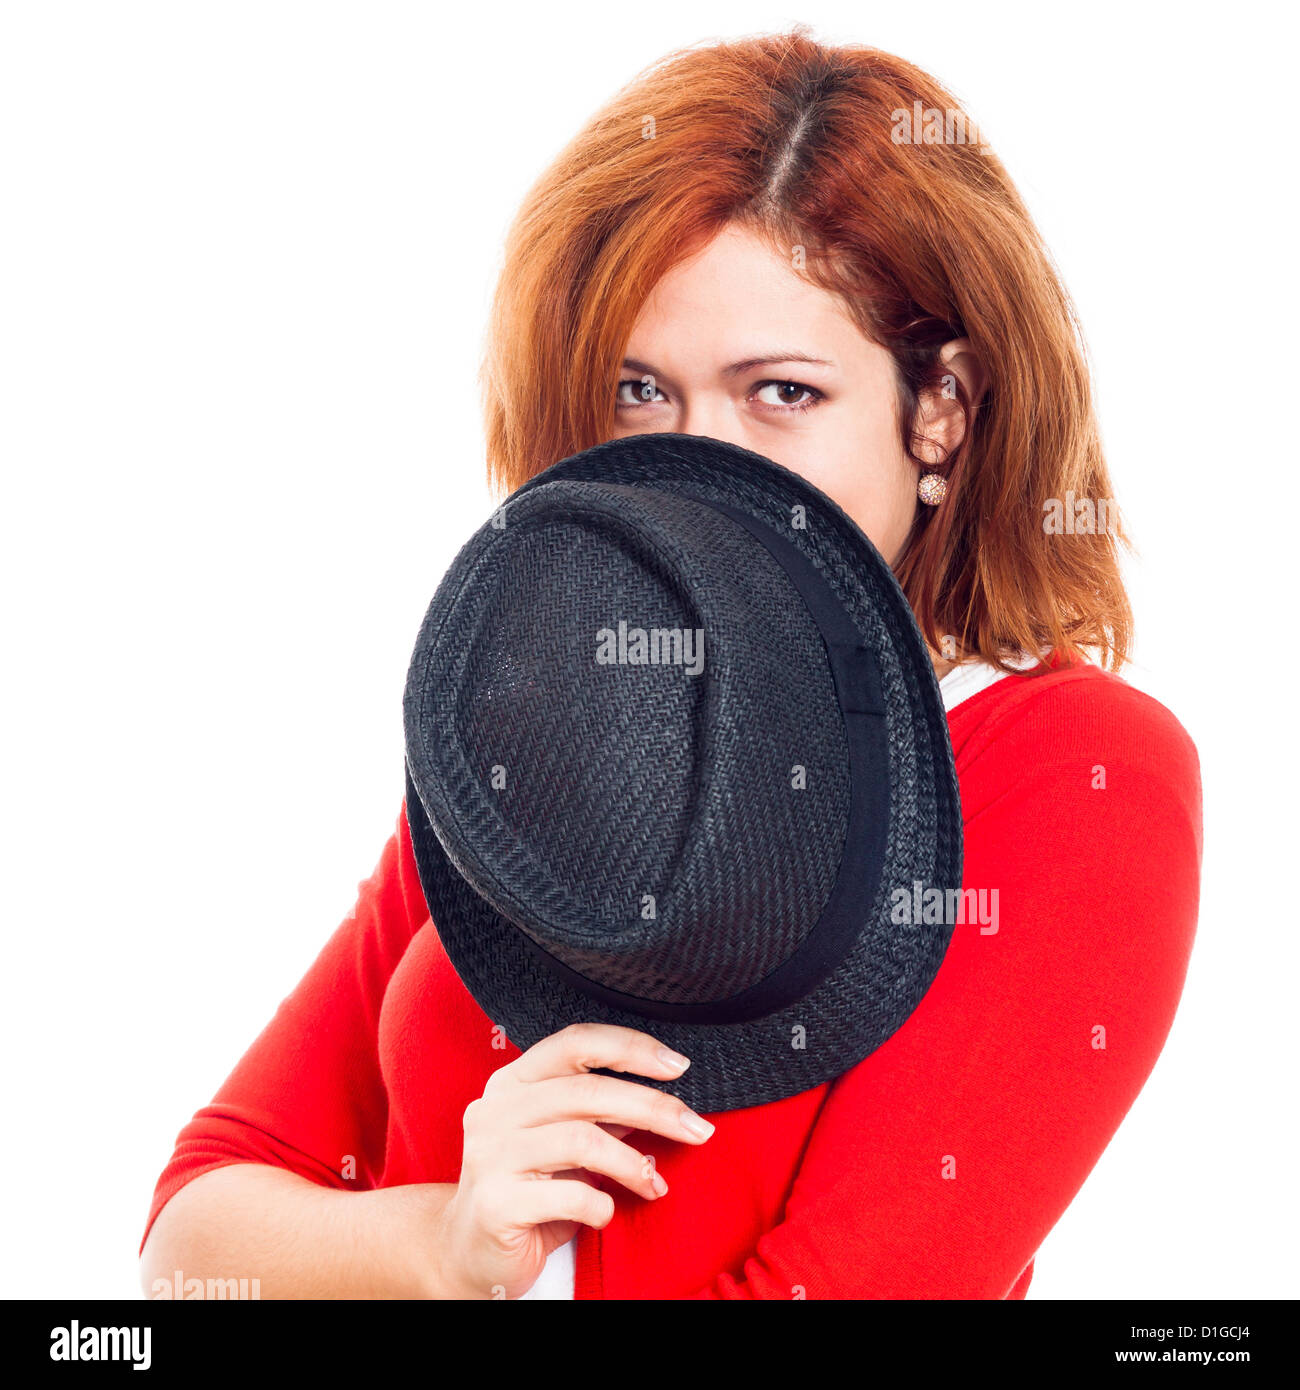 Giovane donna segreti nasconde la faccia dietro hat, isolato su sfondo bianco. Foto Stock